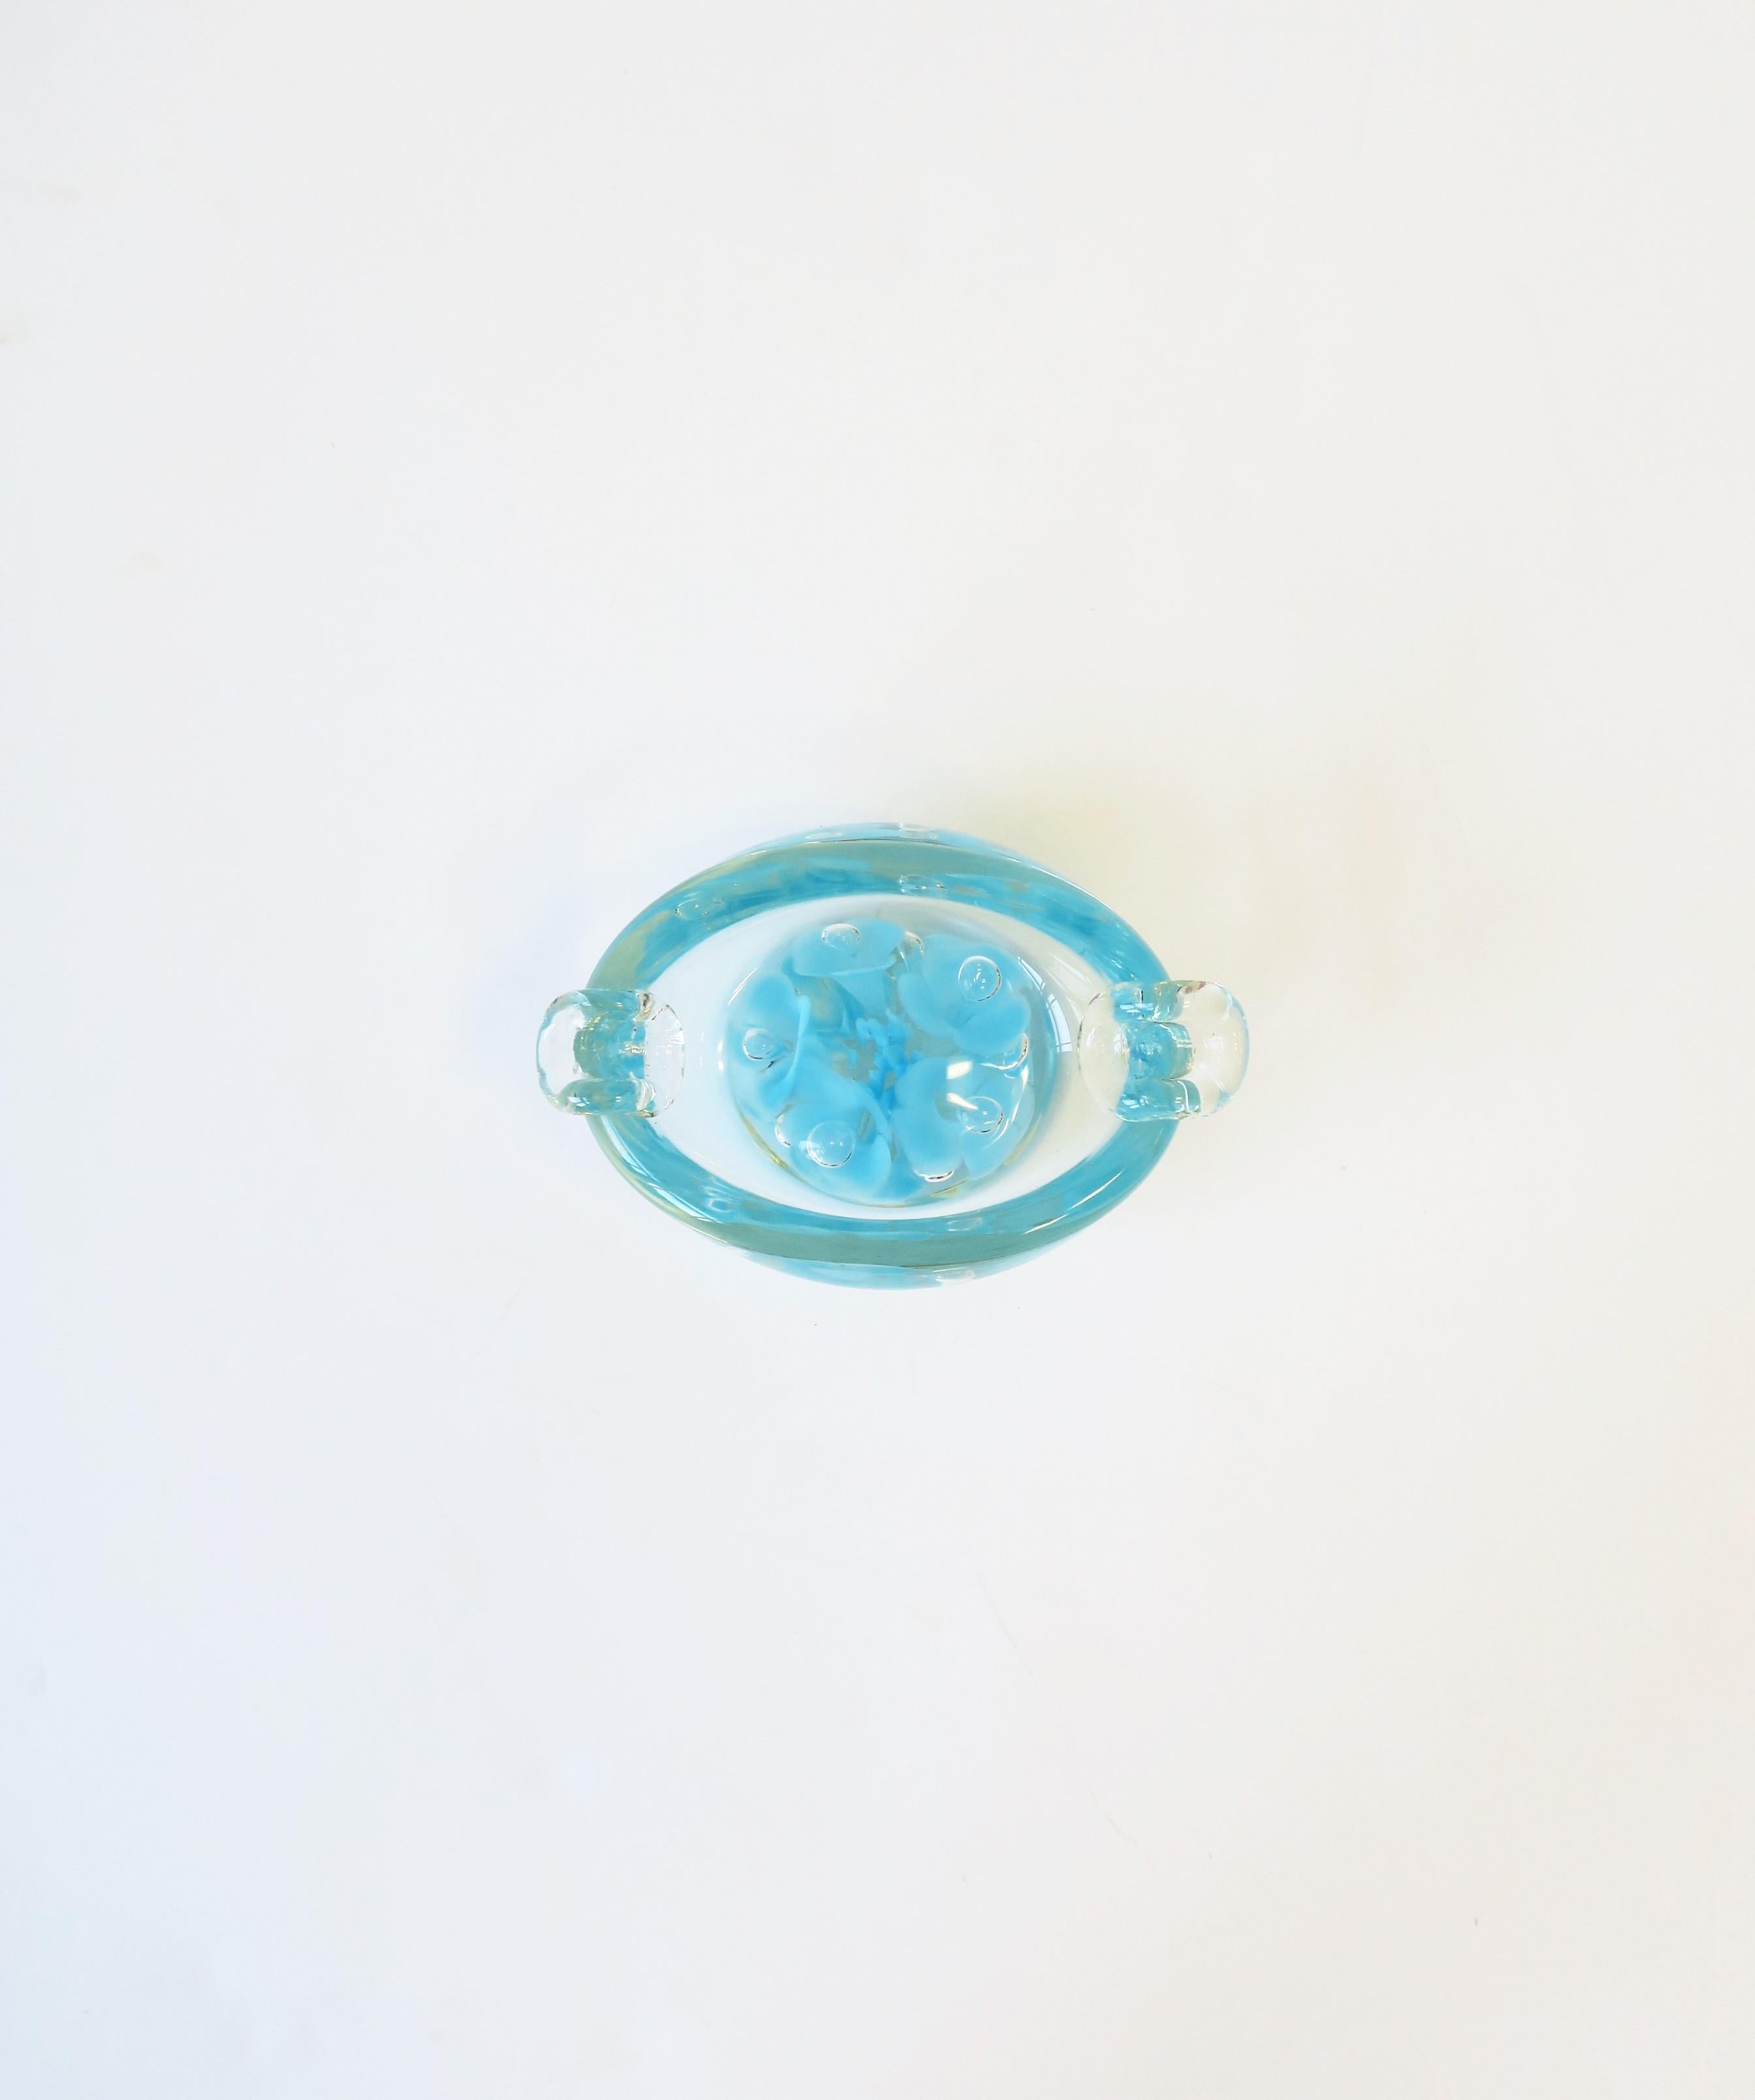 Petit et important cendrier ou bol en verre d'art bleu ciel de Murano, vers la fin du 20e siècle, Italie. Idéal pour l'usage auquel il est destiné (cendrier), en tant que pièce indépendante ou pour contenir de petits objets tels que des bijoux sur